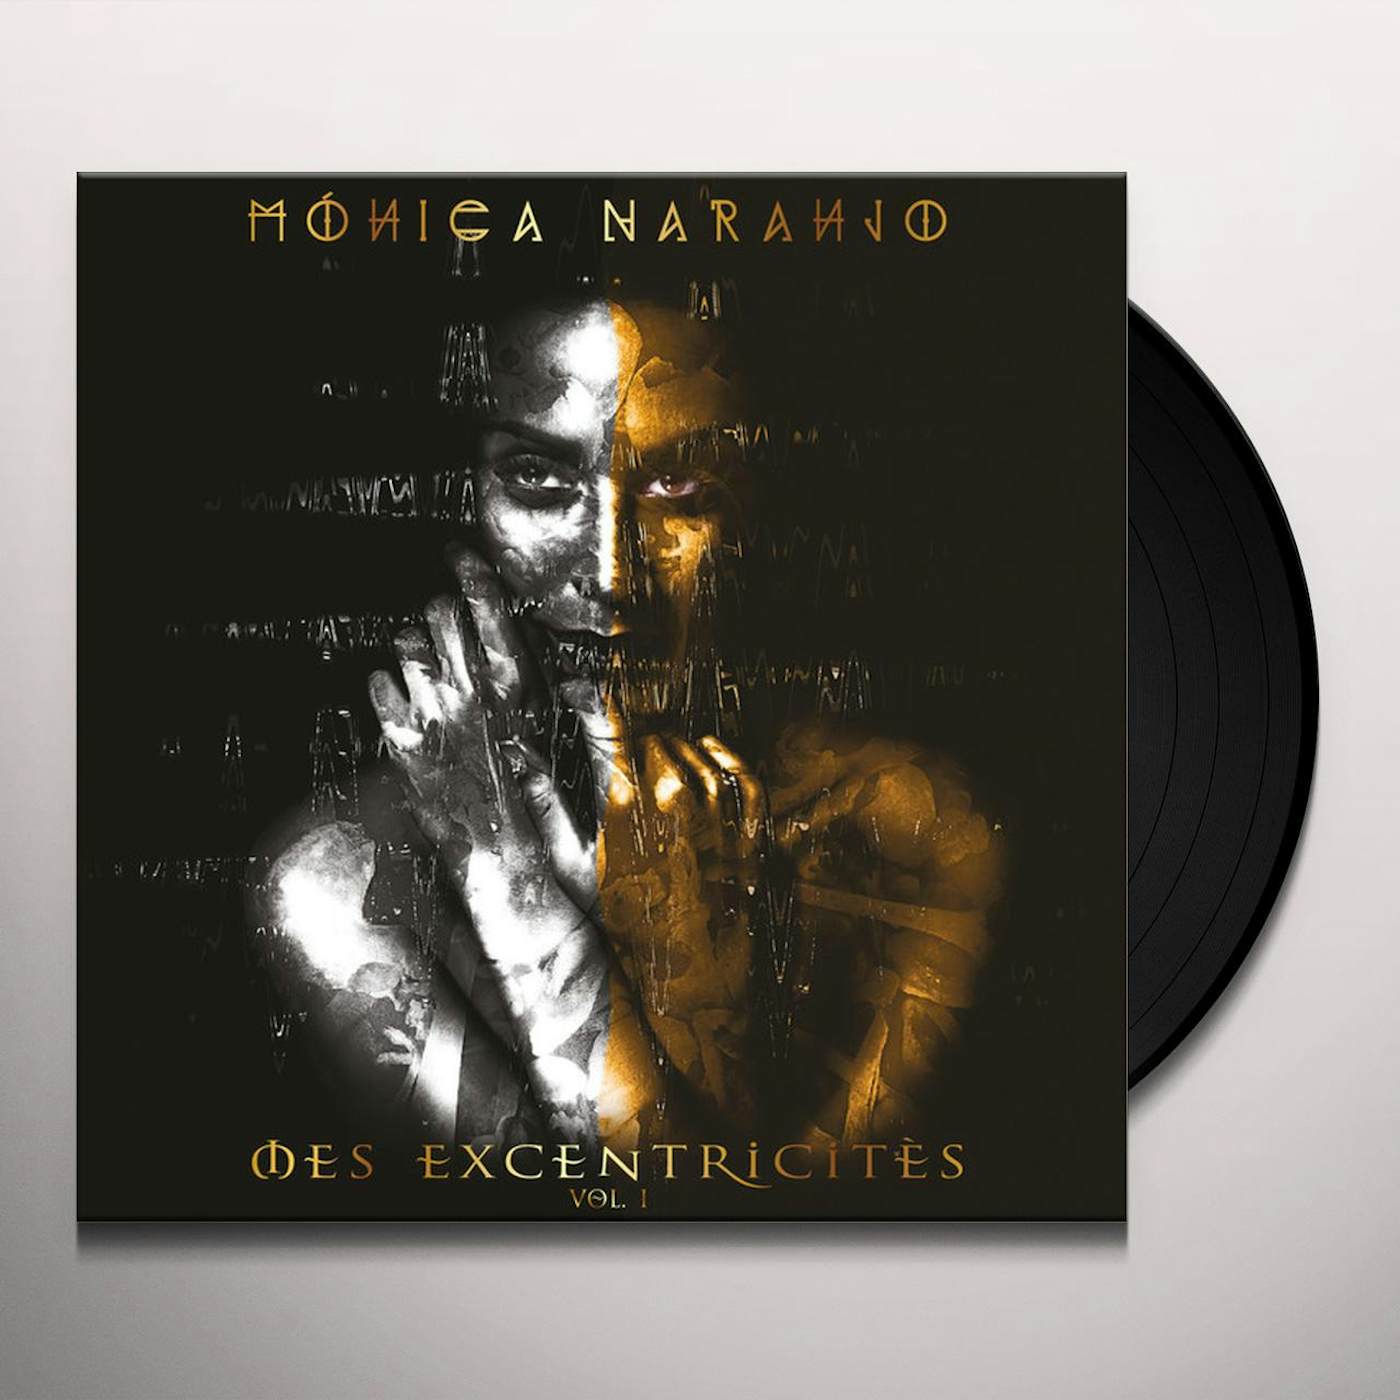 New-CD-Monica Naranjo-monica naranjo-Digipack--Brand New